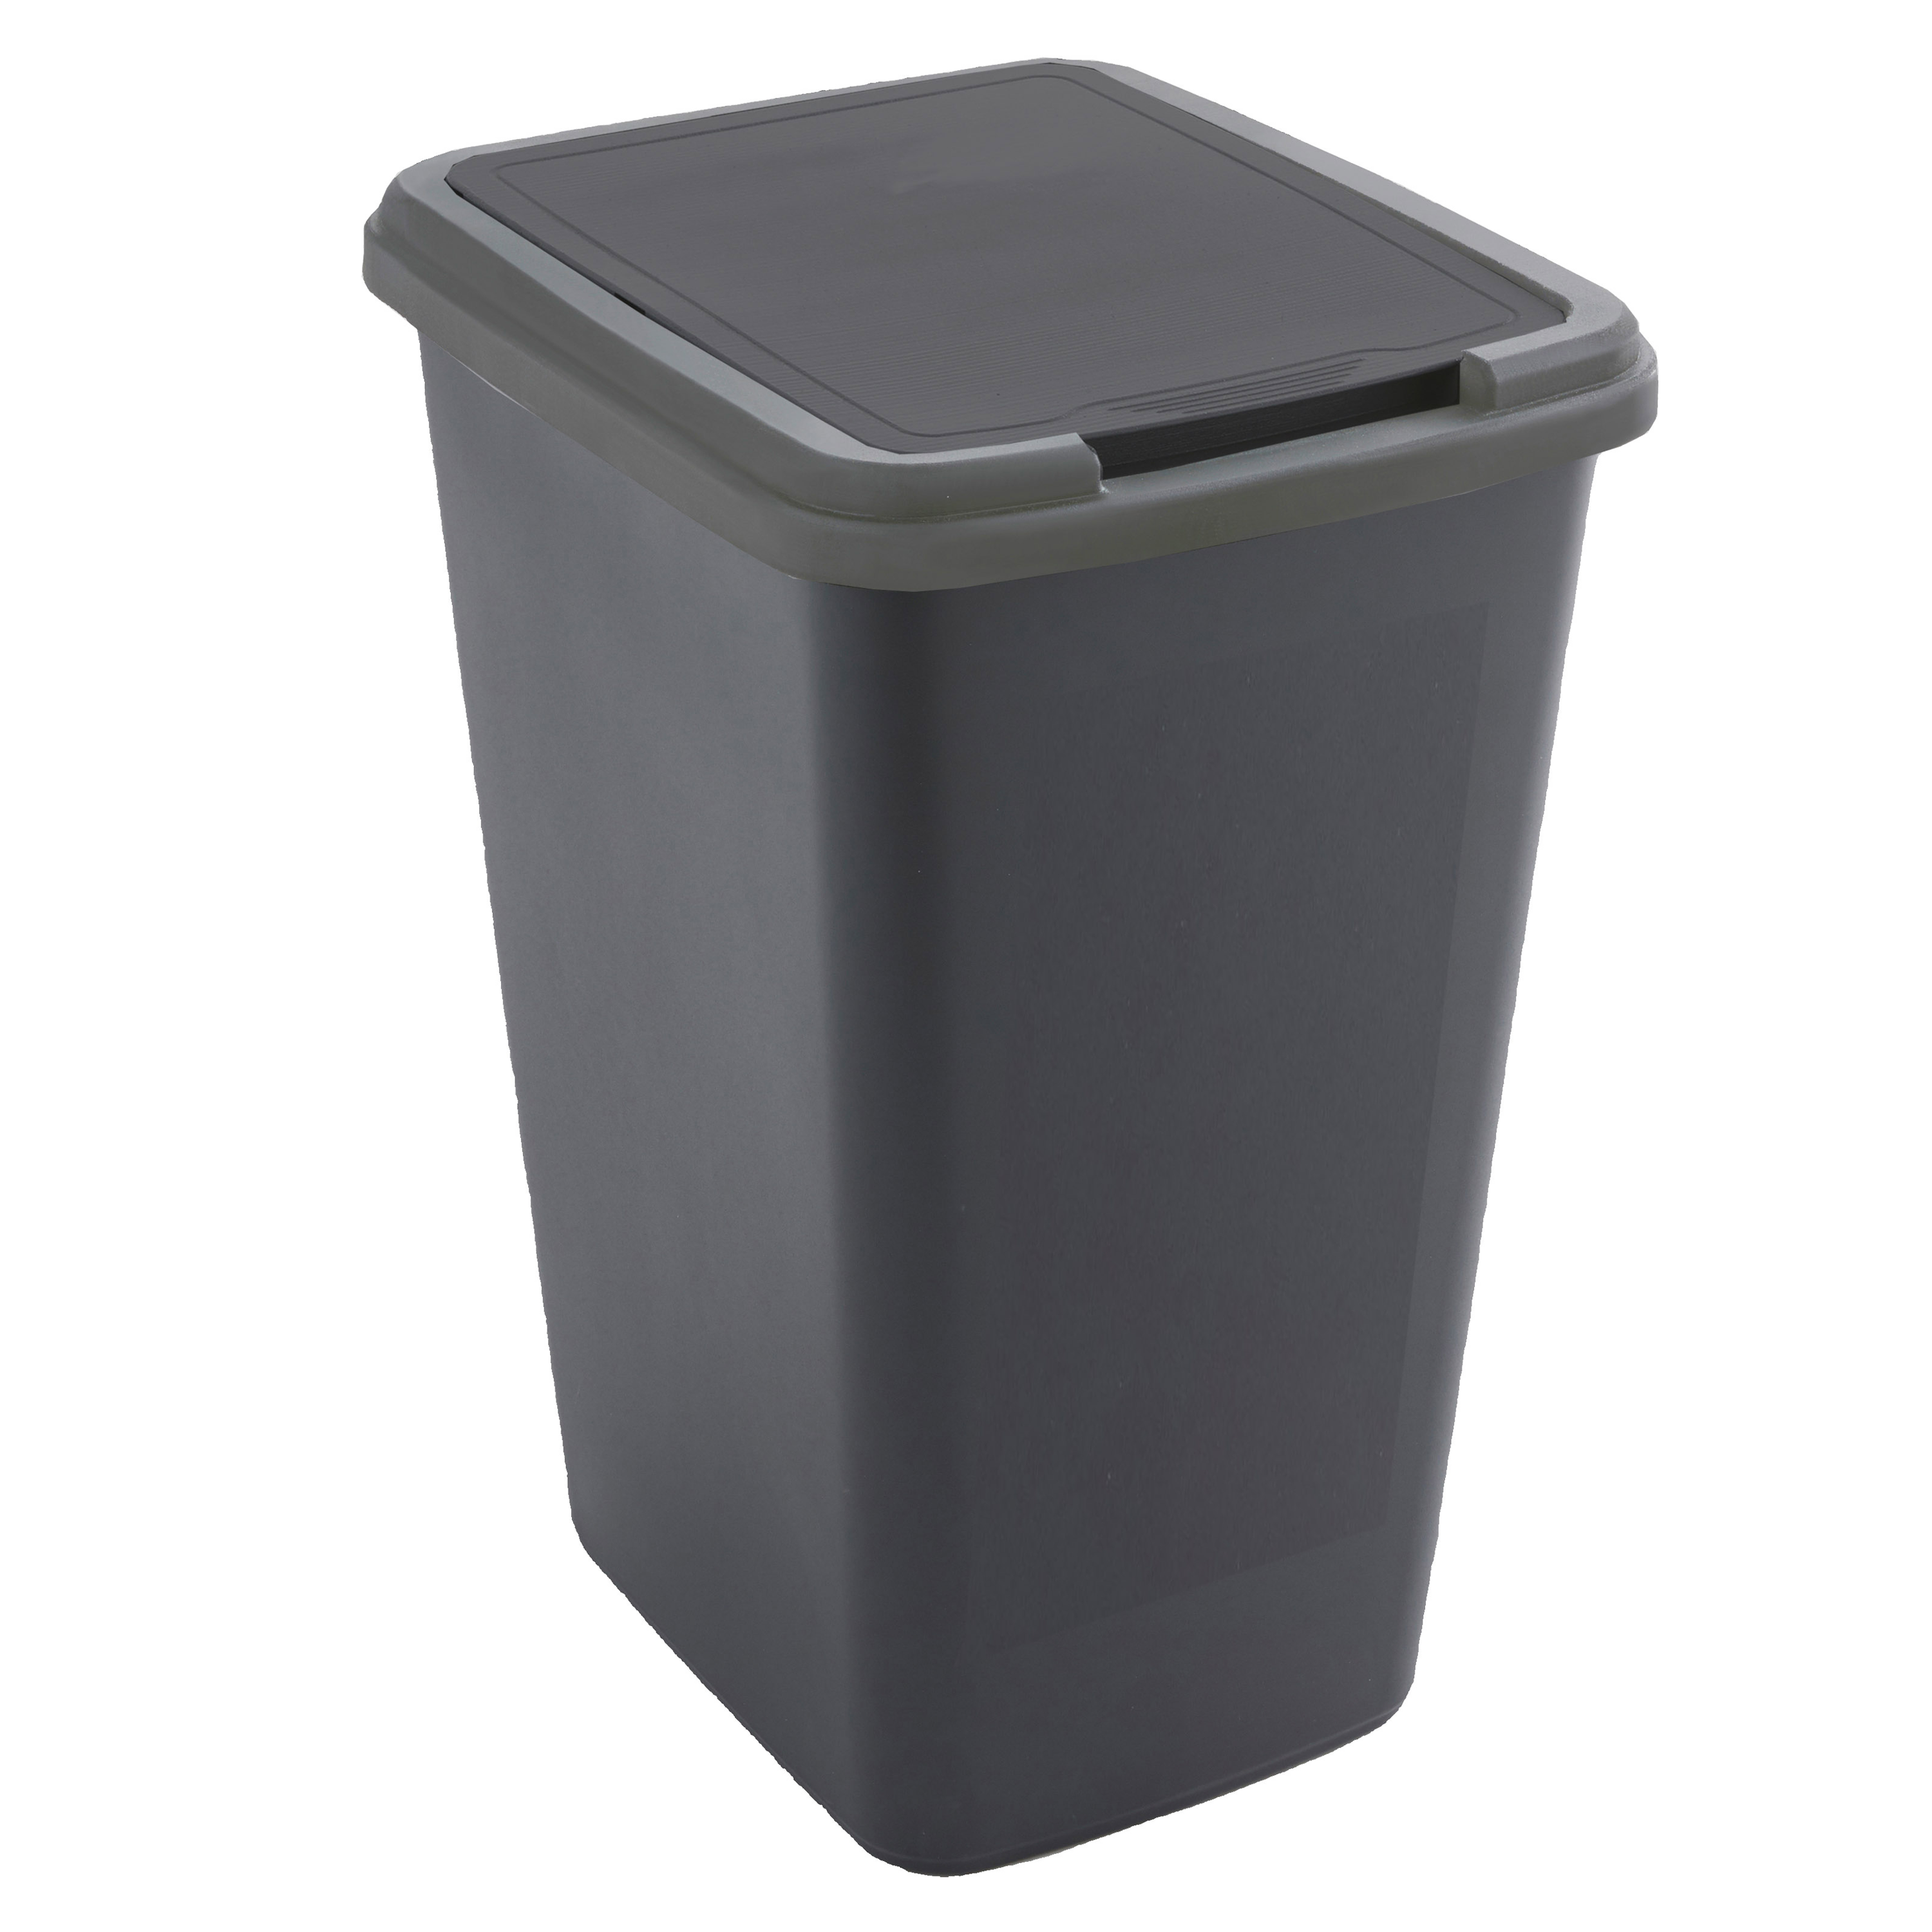 Caixote do Lixo Profissional de 50 Litros em Aço Inoxidável de Fundo  Impermeável, Balde com Tampa, Pedal e Rodas, Dimensões de Ø 390x615 mm LxA